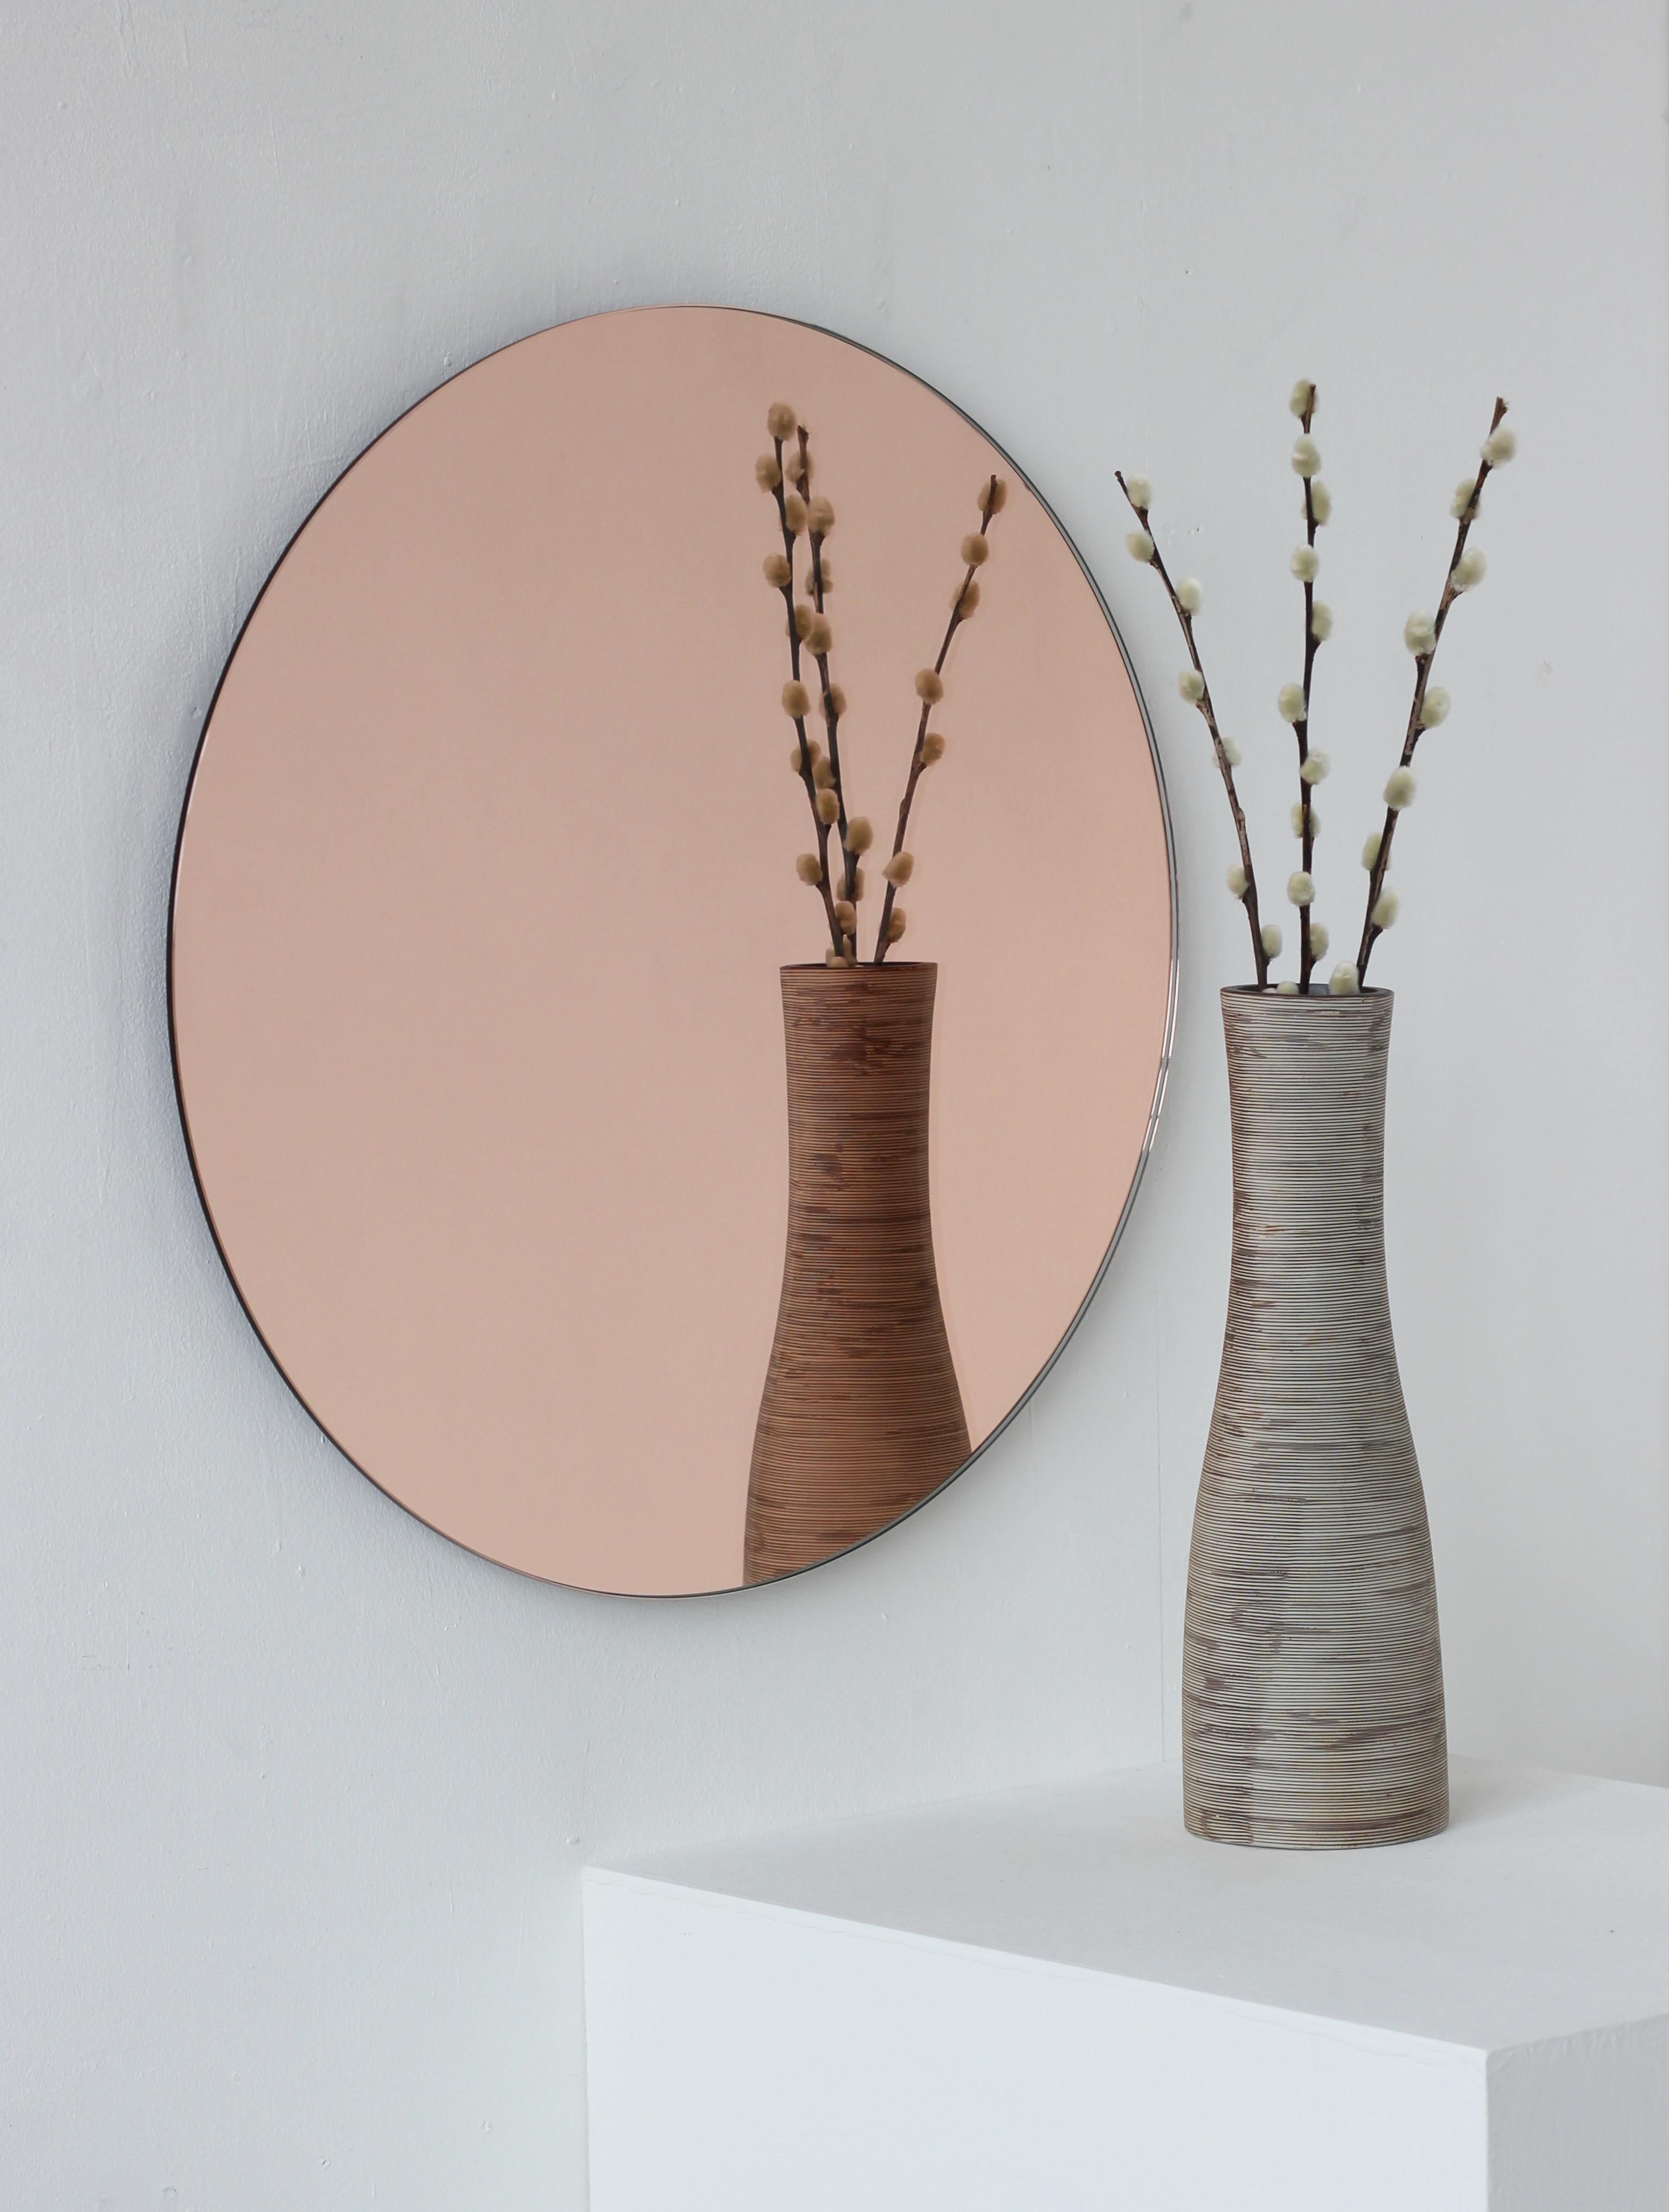 Ab Lager lieferbar.

Charmanter und minimalistischer runder rahmenloser Spiegel in Roségold/Pfirsich mit Schwebeeffekt. Hochwertiges Design, das dafür sorgt, dass der Spiegel perfekt parallel zur Wand steht. Entworfen und hergestellt in London,